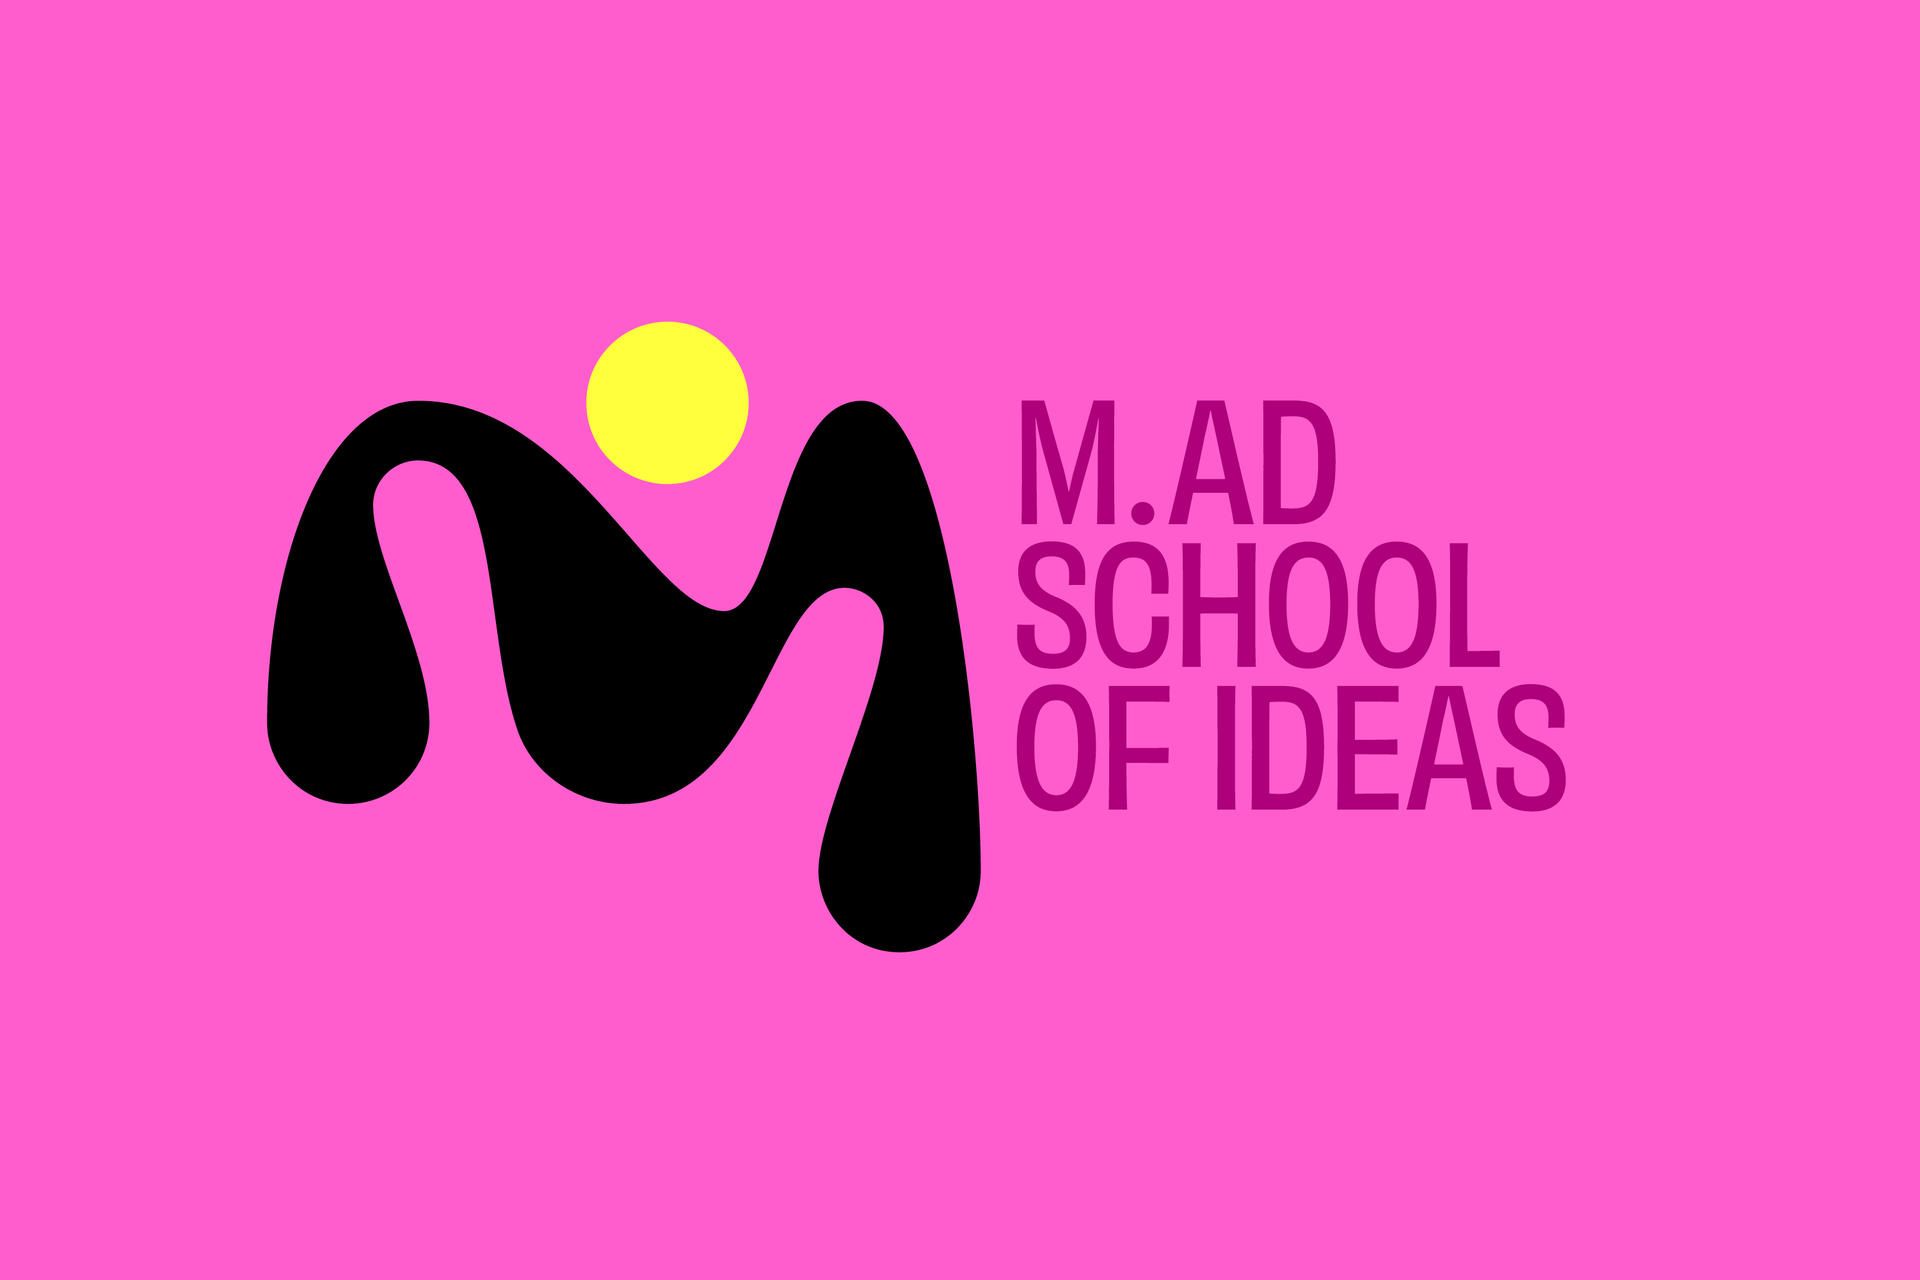 M.AD School of Ideas, Bengaluru